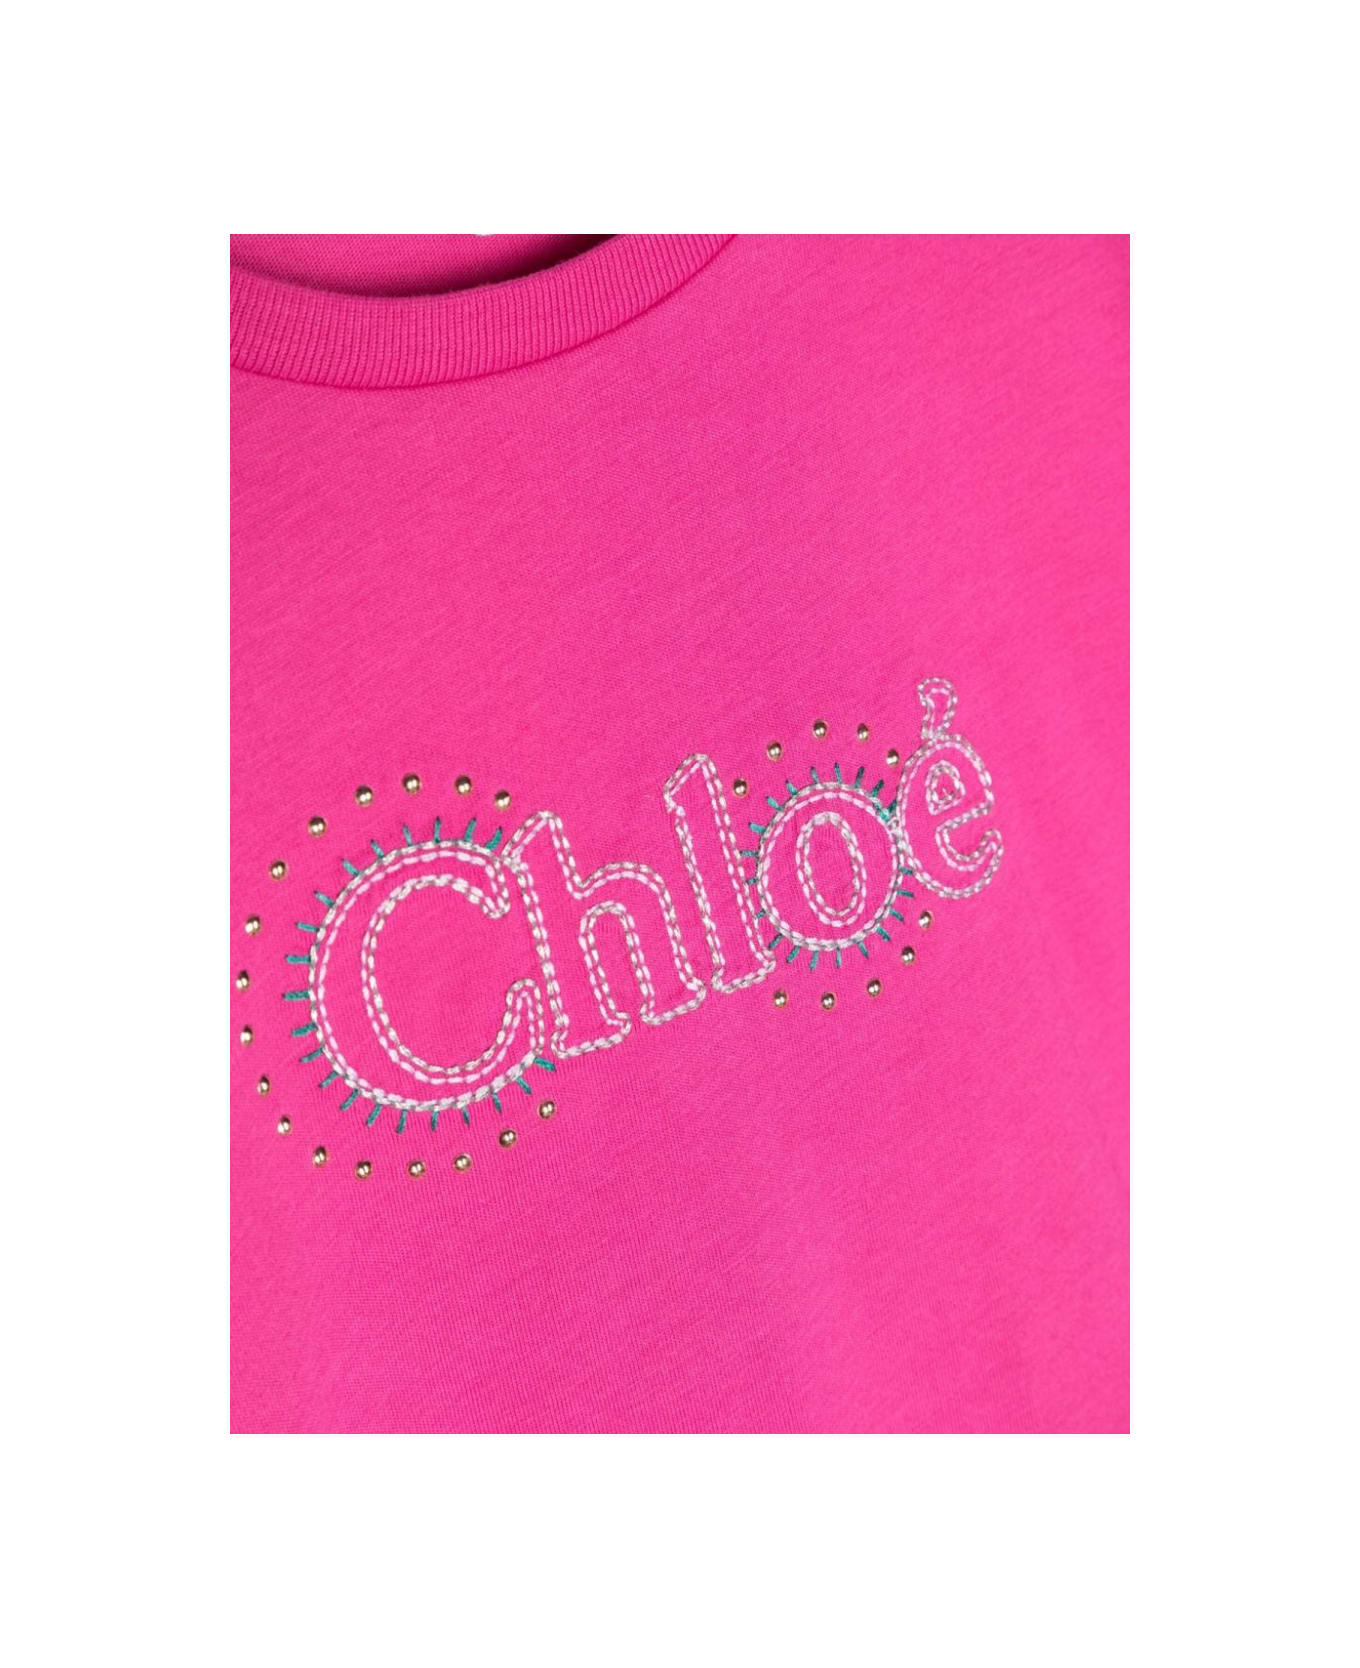 Chloé Tee Shirt - PINK